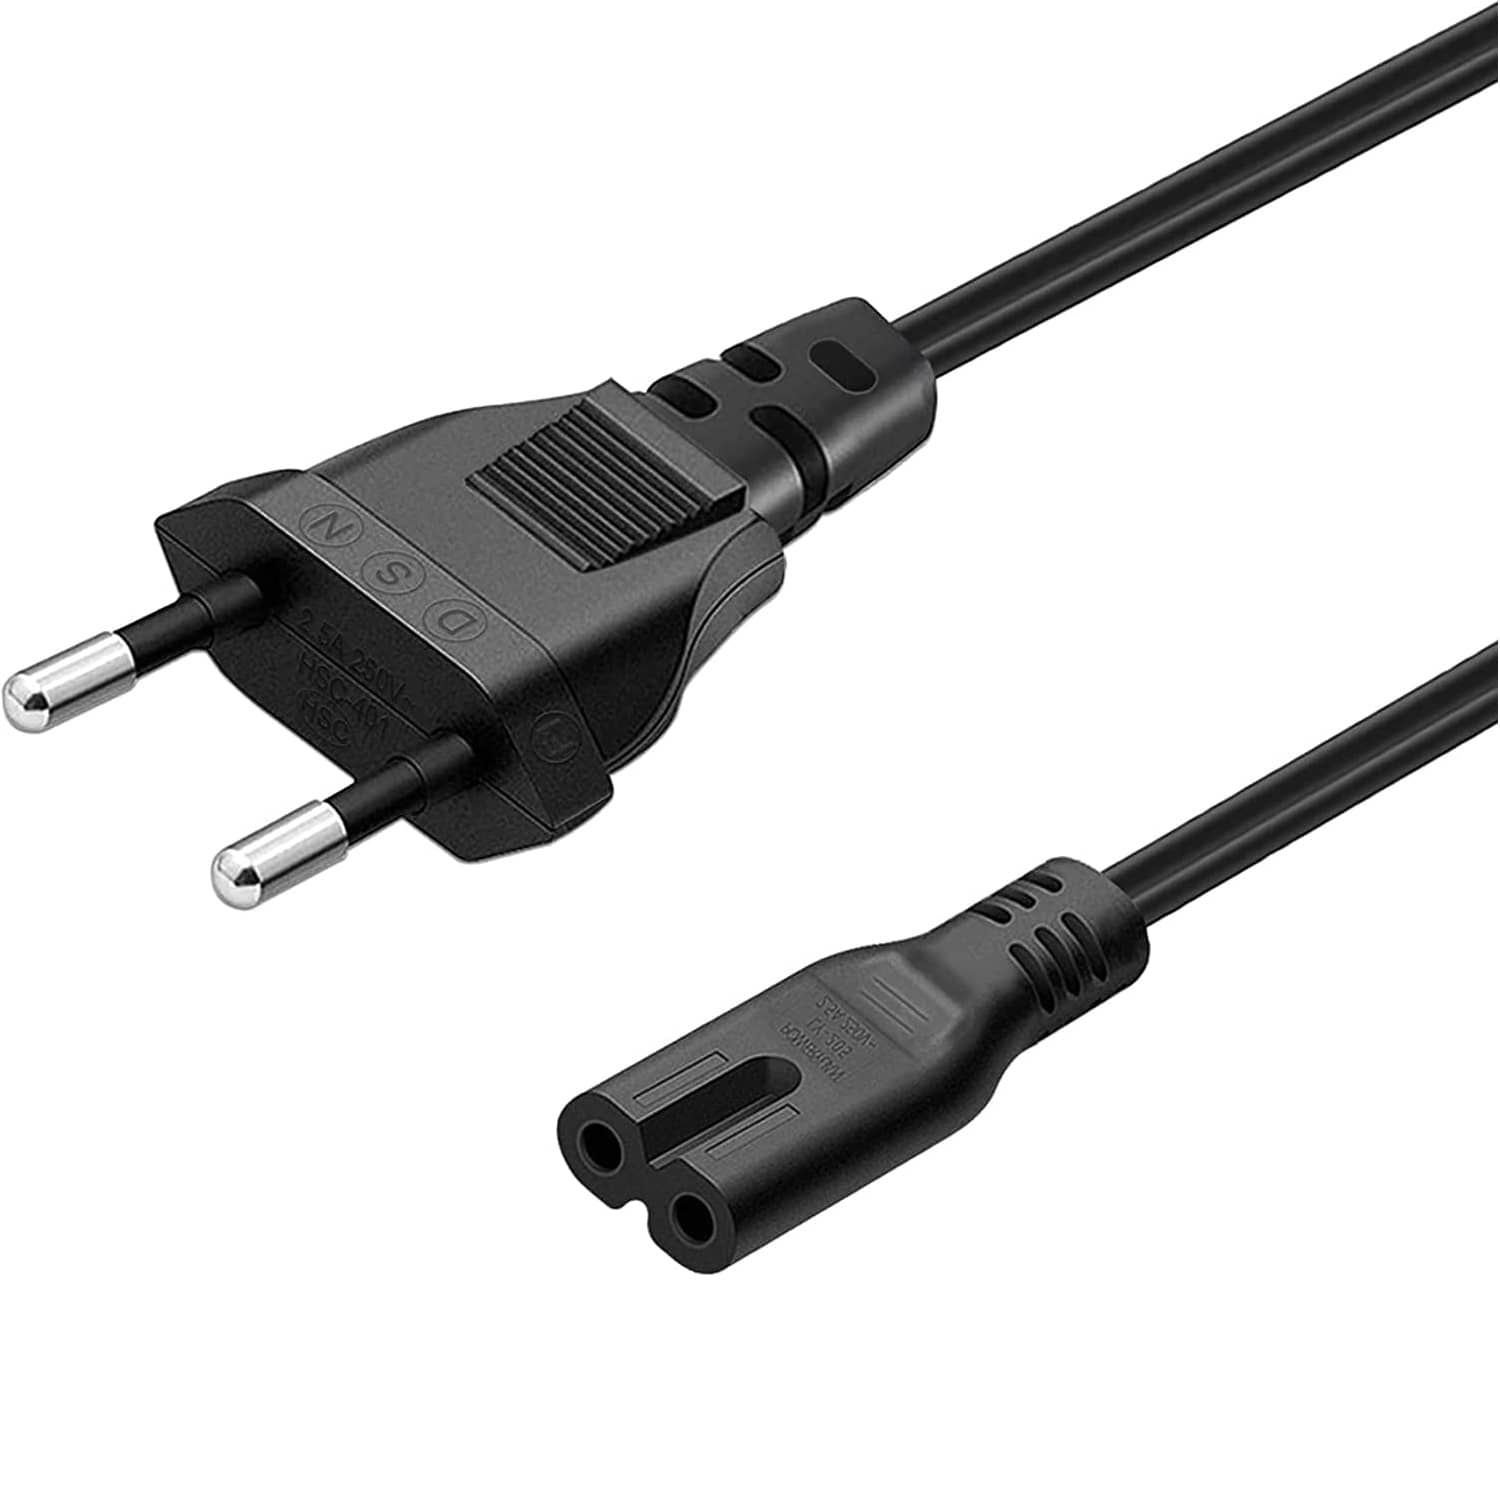 Cable de alimentacion IEC-320-C7 1.5 M Negro